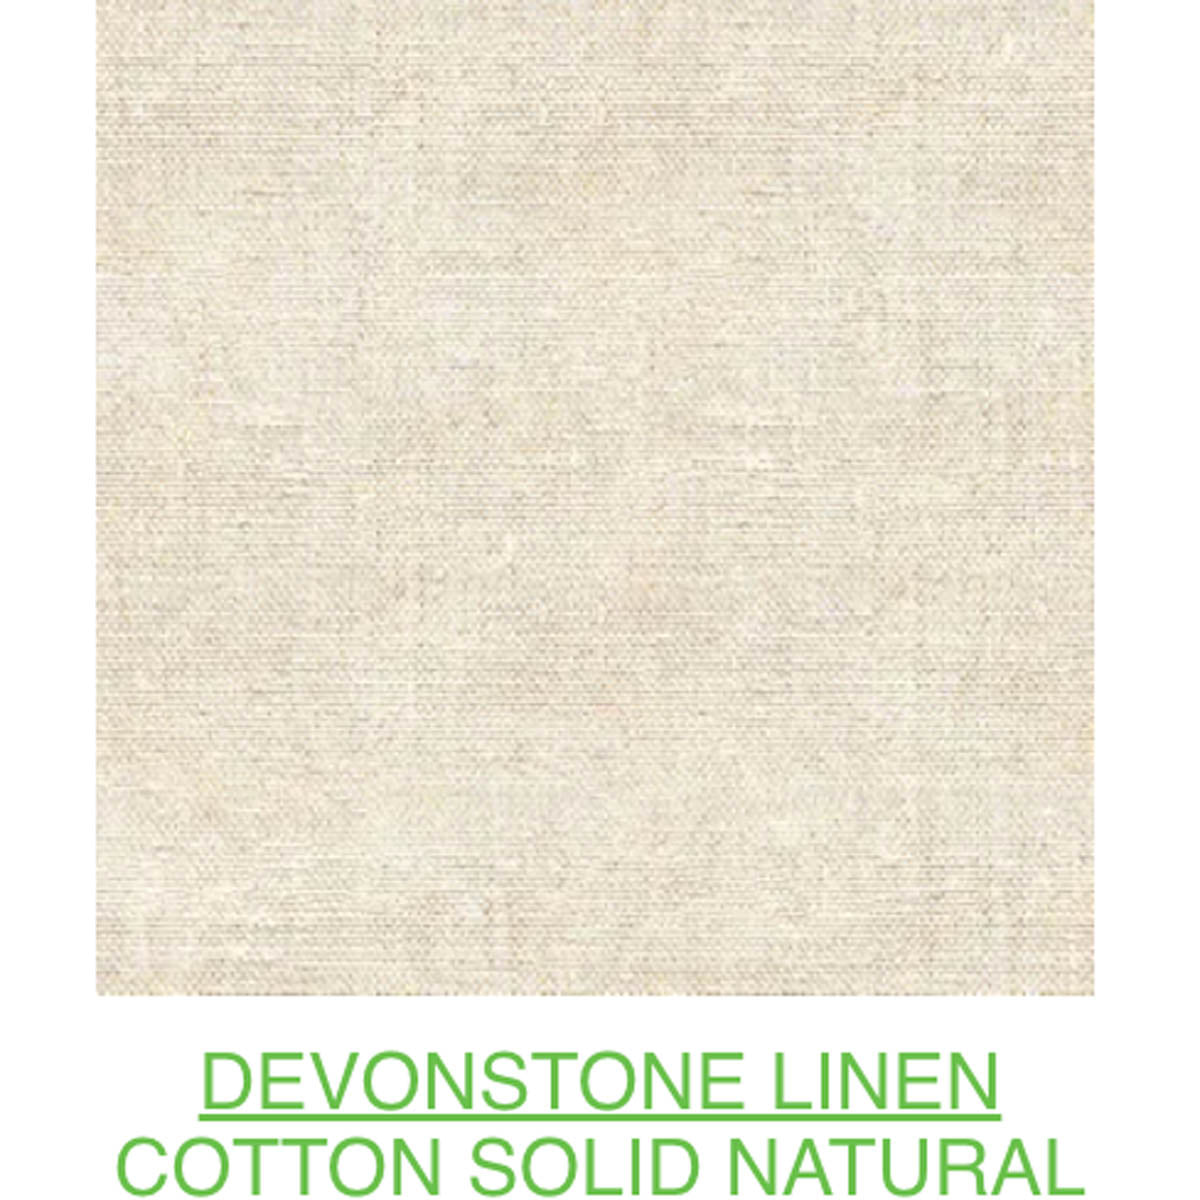 D/L Devonstone Linen Solids 55% Linen 45% Cotton - #4100 NATURAL